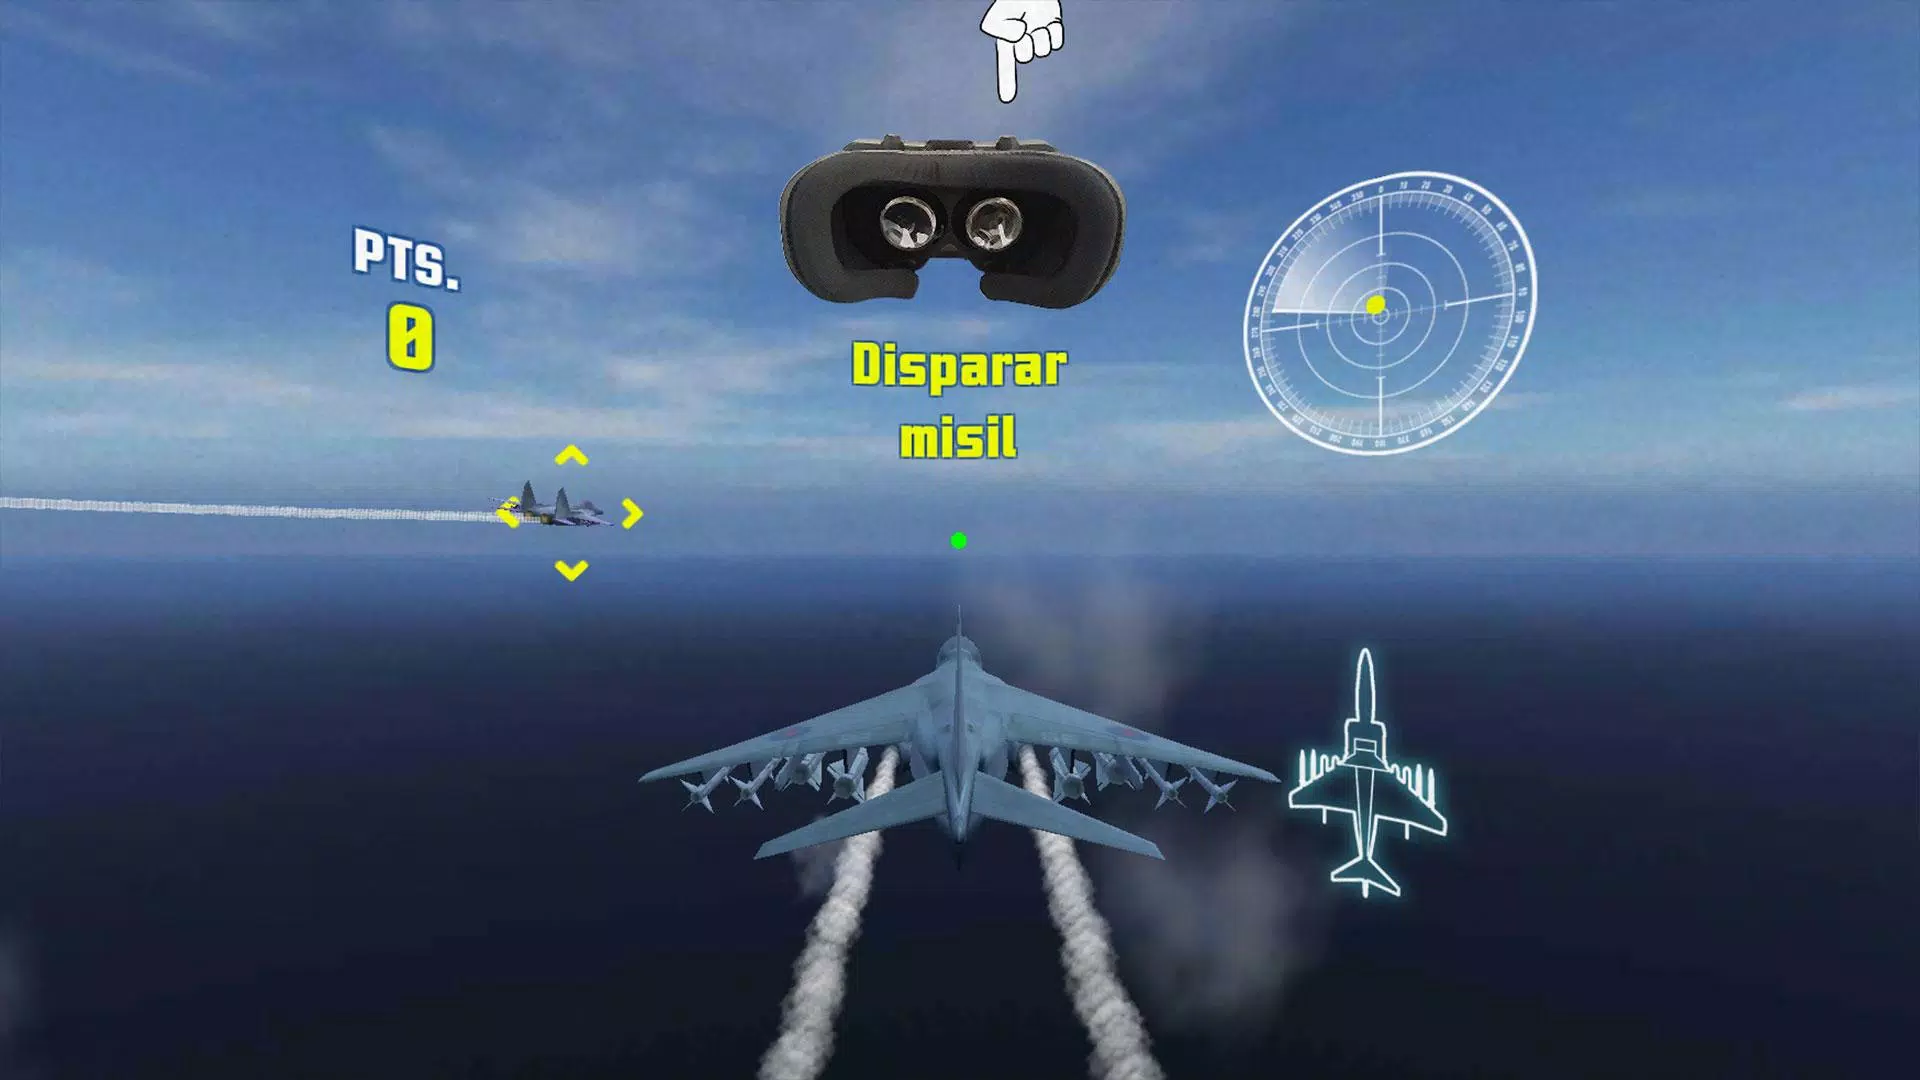 Jet VR Combat Fighter Flight Simulator VR Game for Android - APK Download